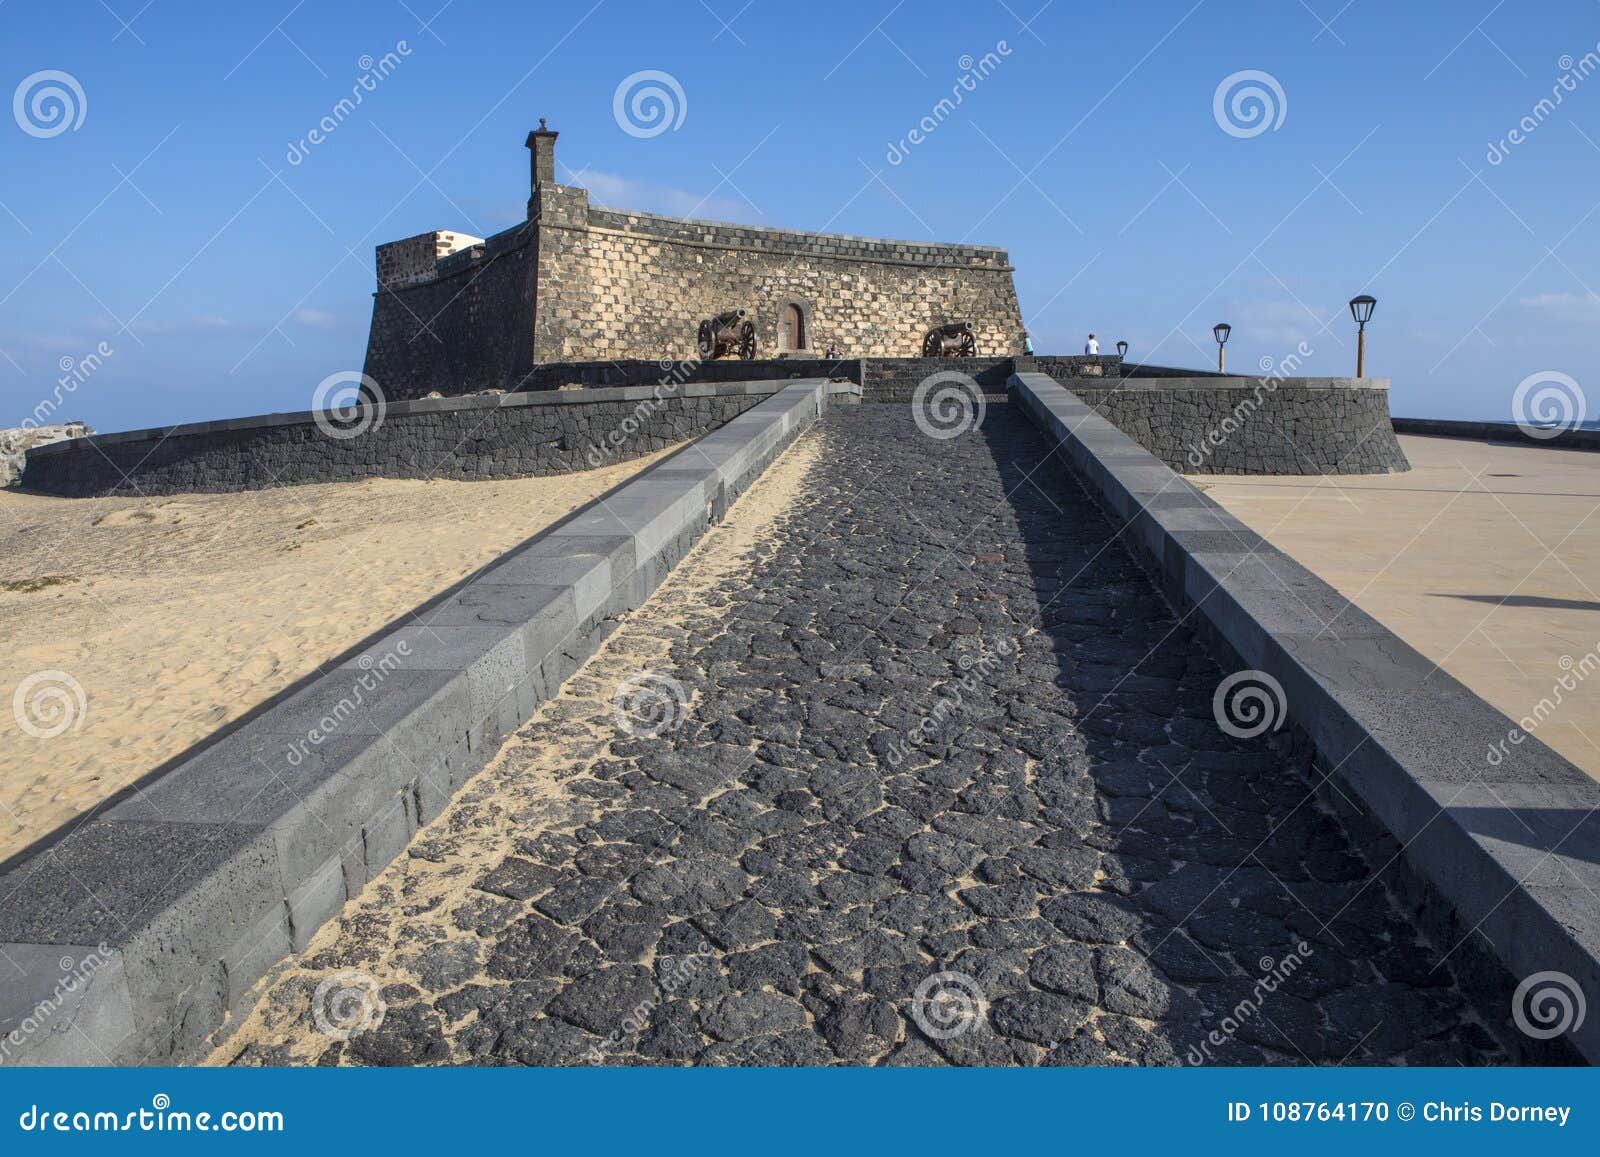 castello de san gabriel in arrecife in lanzarote